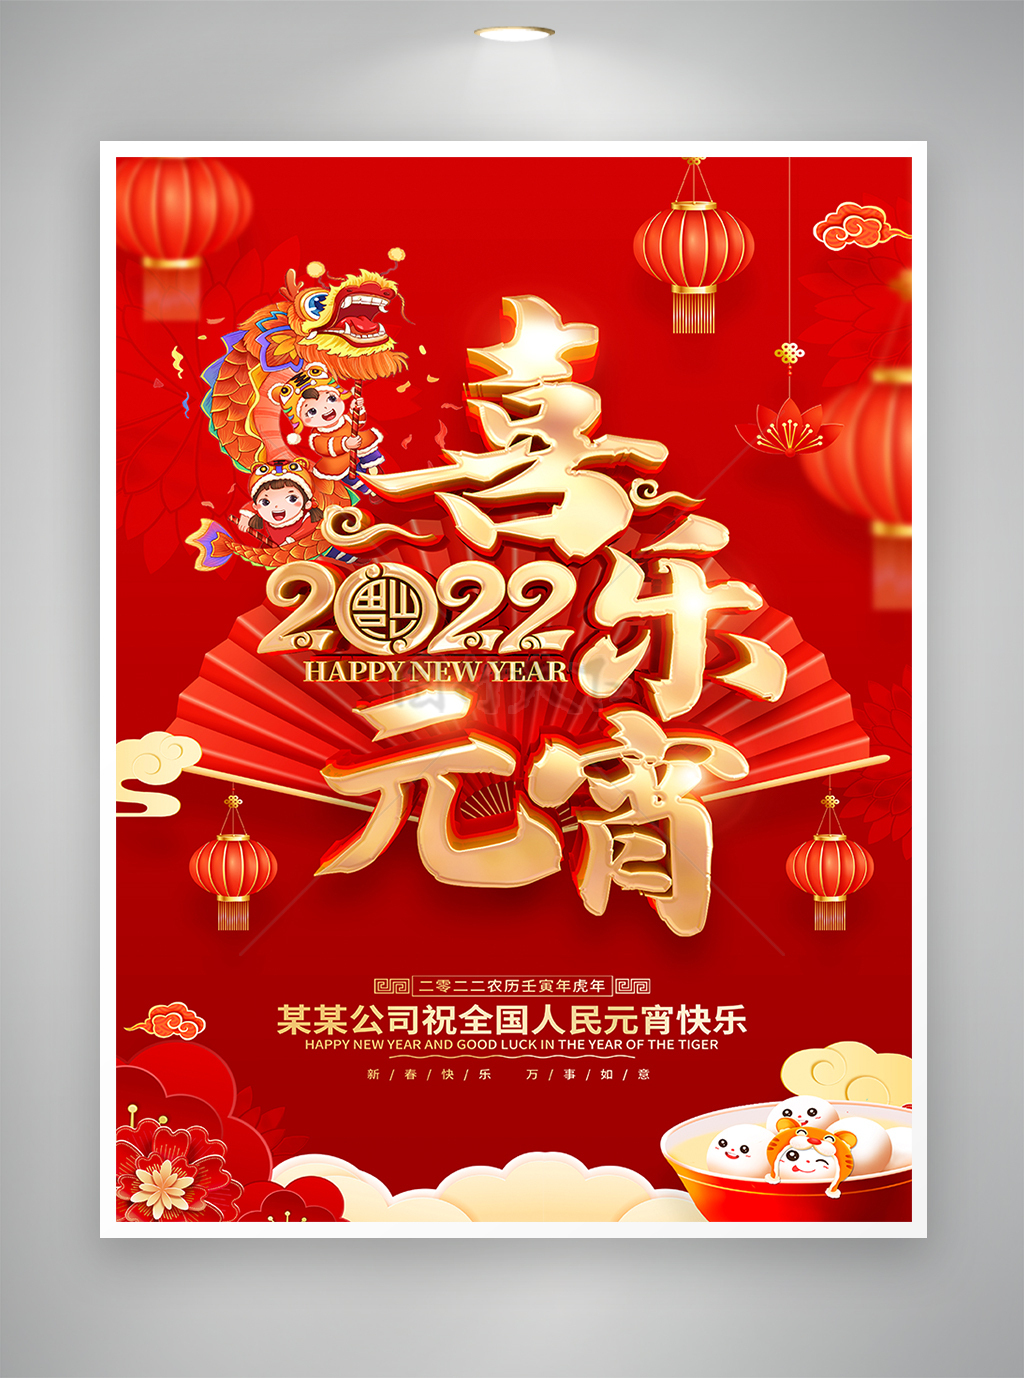 红色喜庆烫金风壬寅虎年元宵节节日宣传海报